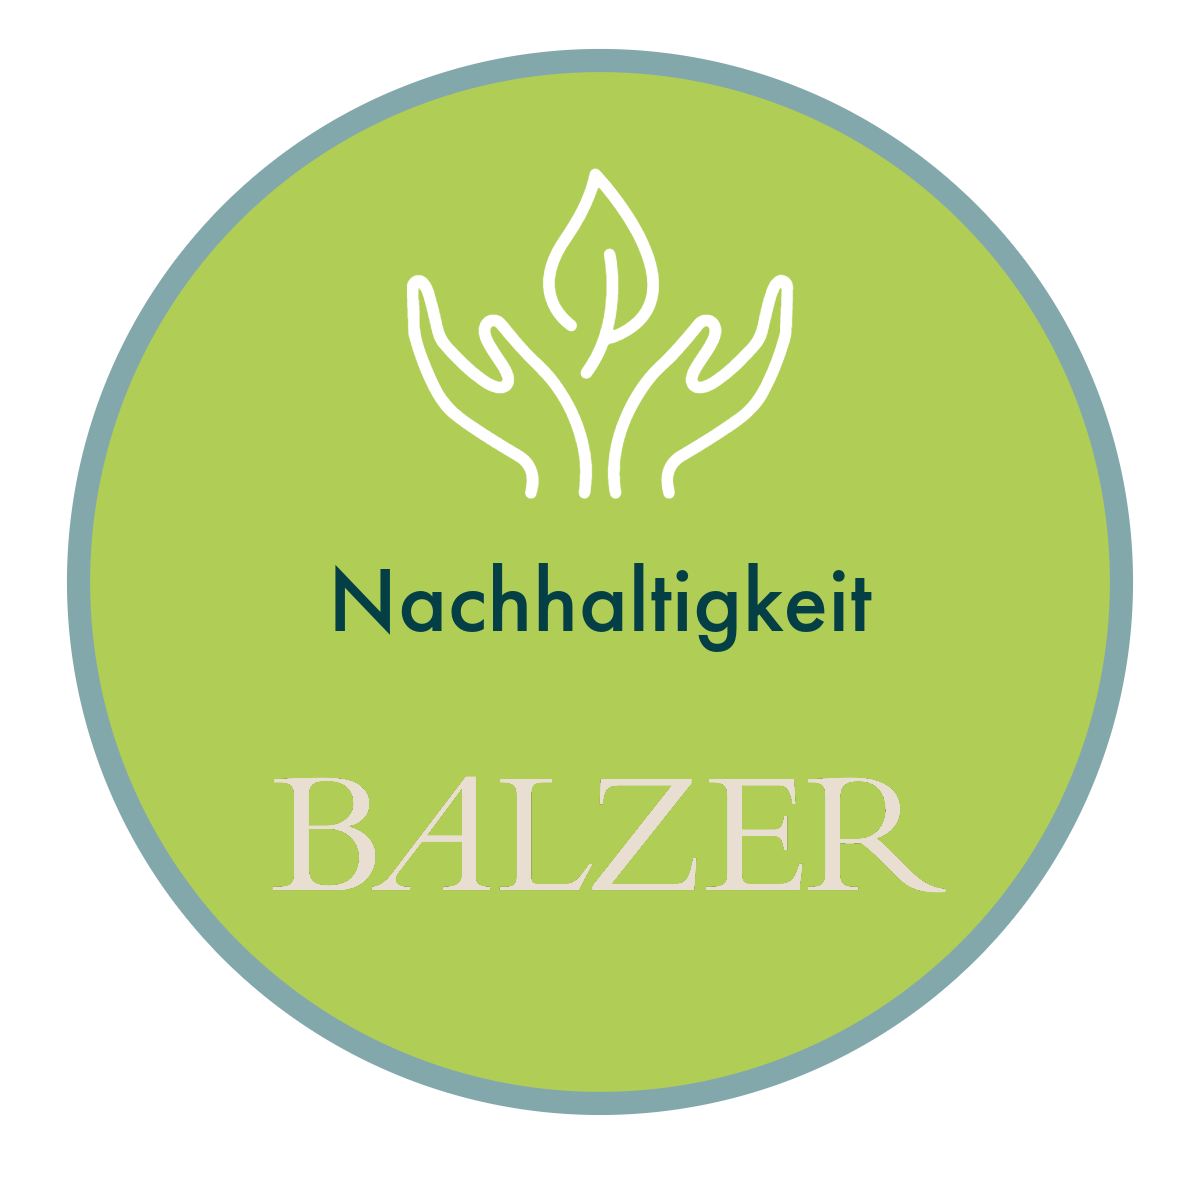 BALZER-Signet-für-Nachhaltigkeit